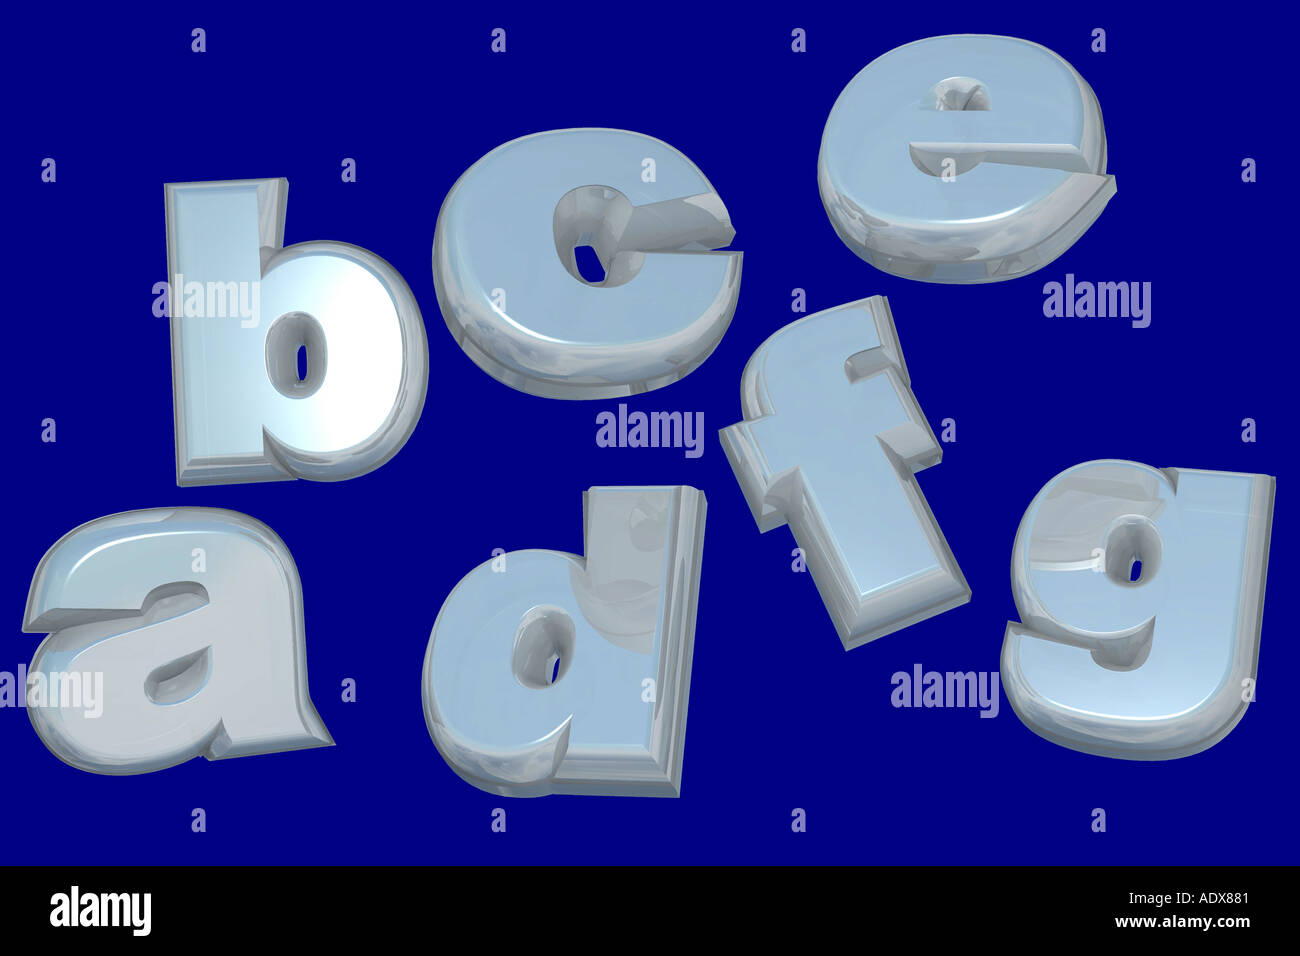 Illustrationen Buchstaben Abc ein b c d e f g Alphabet sieben Alphabetisierung gebildete Blaue Bildung Diverses Hintergrundtextur Stockfoto